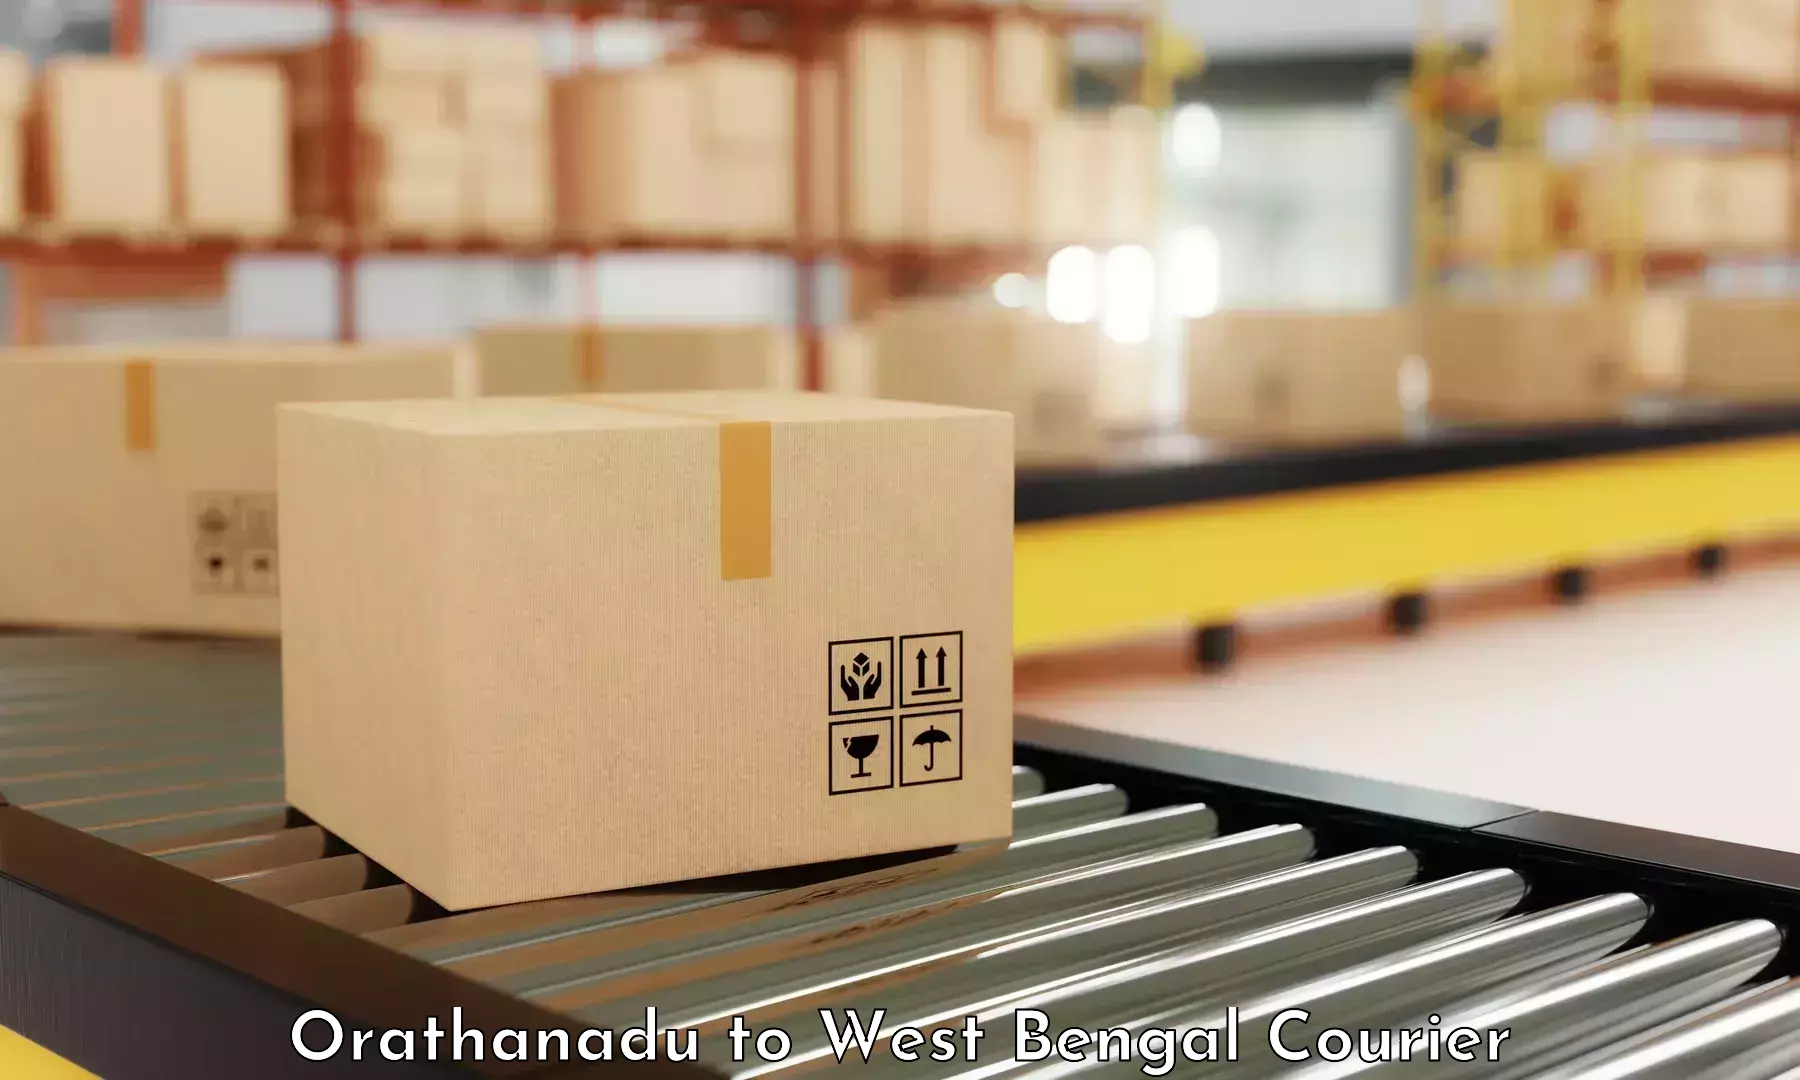 Efficient cargo handling Orathanadu to Budge Budge